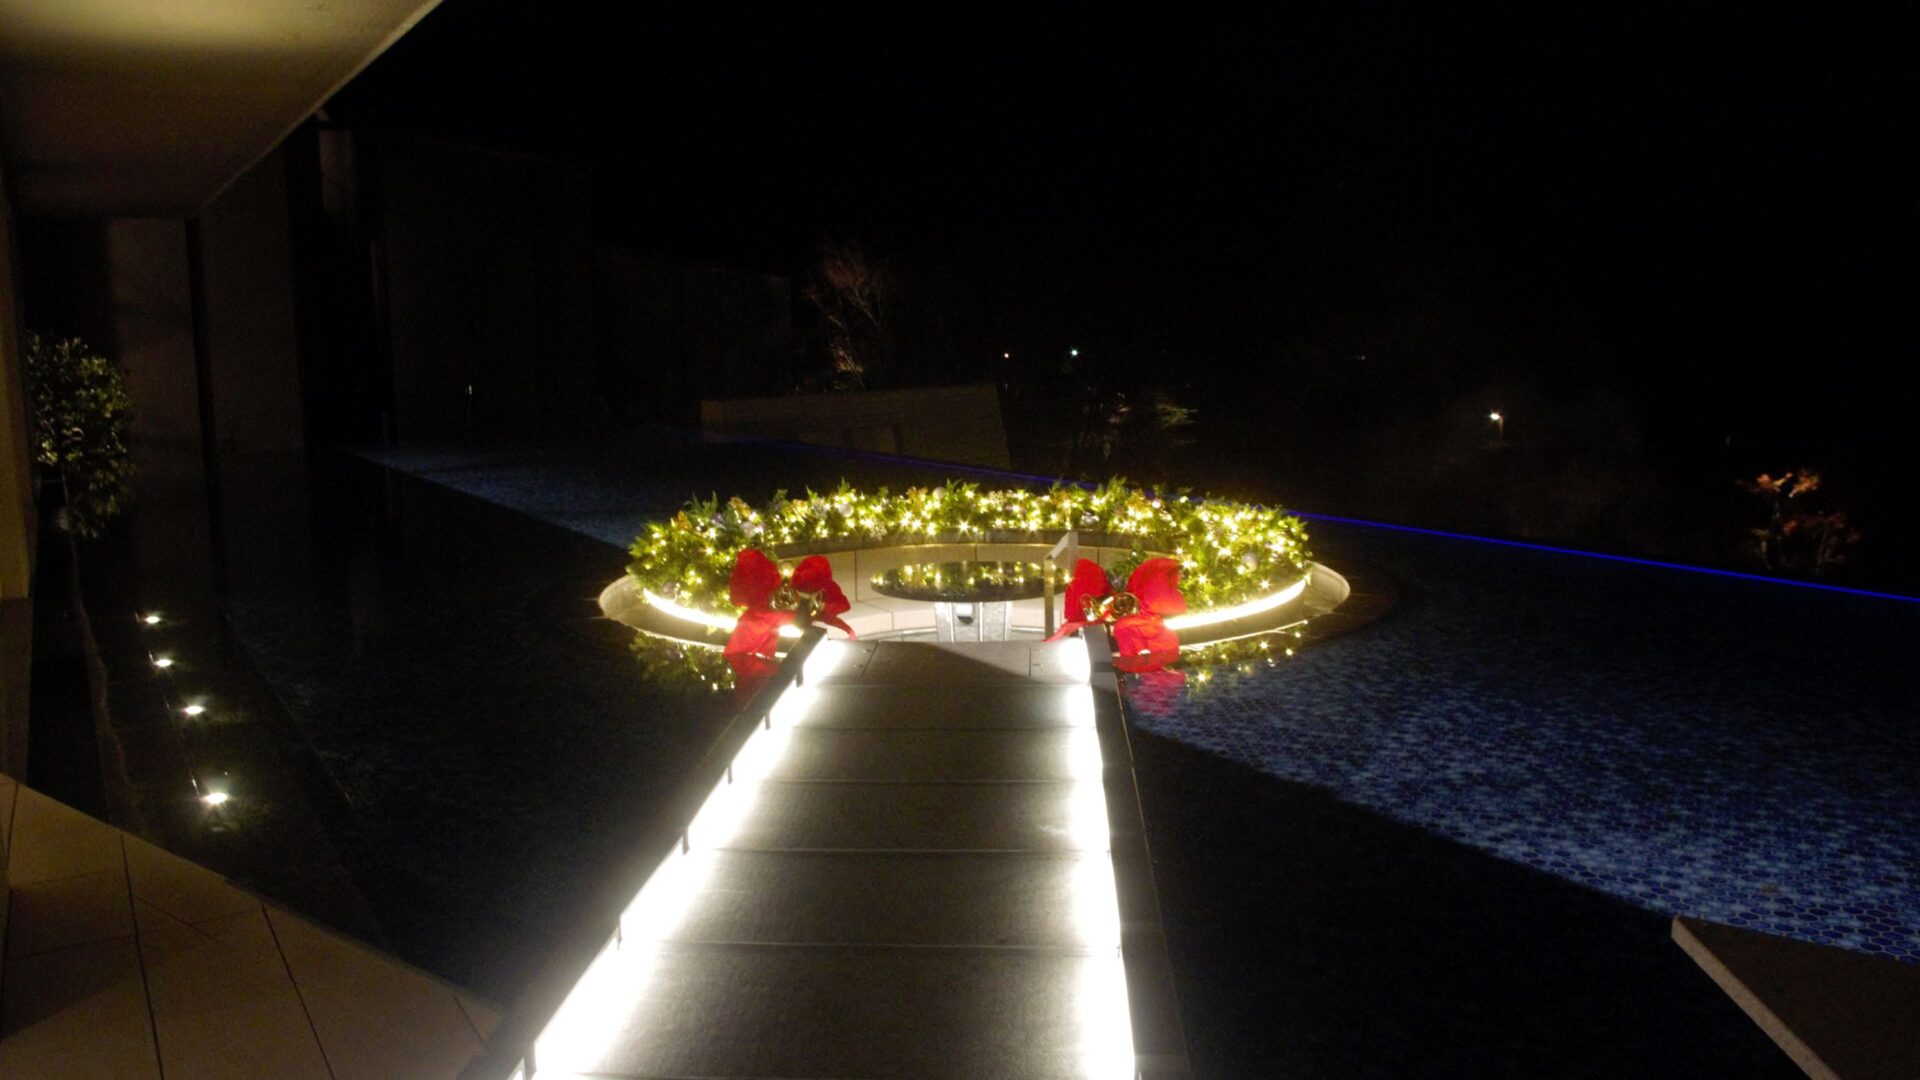 クリスマス装飾 始まりました Staff Blog 観光 イベント情報 箱根 芦ノ湖のホテル 旅館なら 箱根 芦ノ湖 はなをり 公式